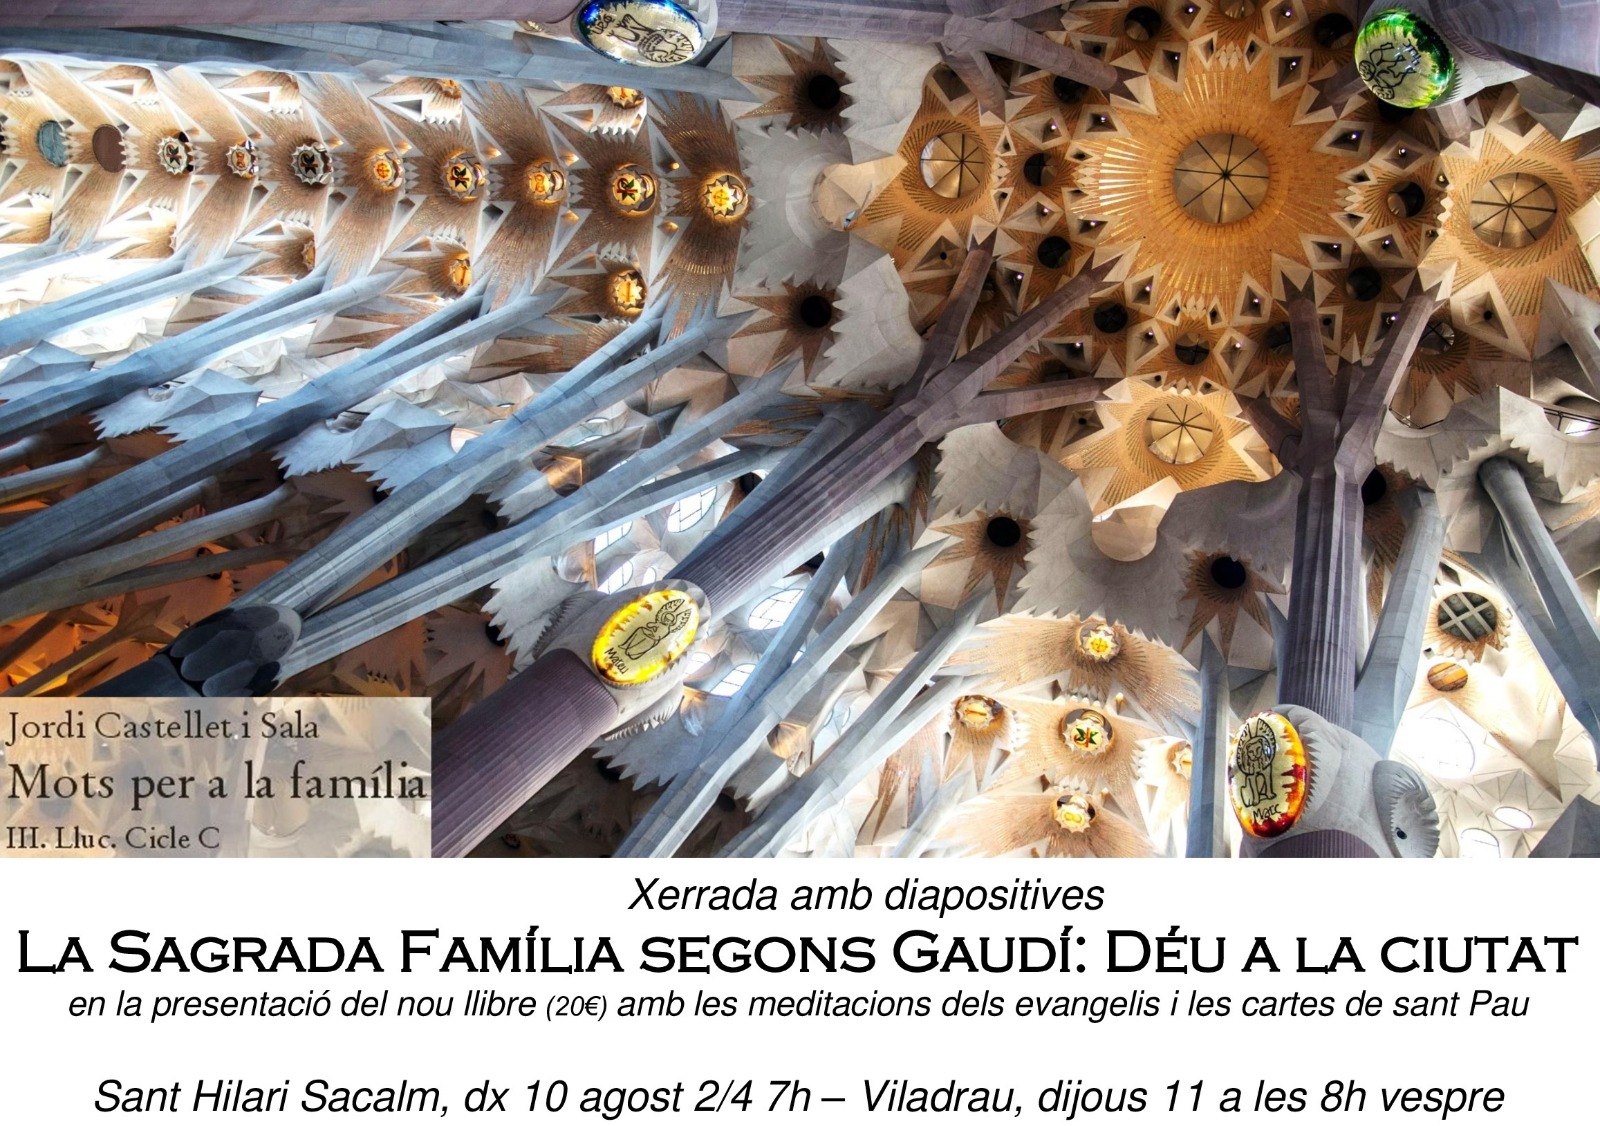 Xerrada amb diapositives: “La Sagrada Família segons Gaudí: Déu a la ciutat”, a càrrec de Mn. Jordi Castellet i Sala